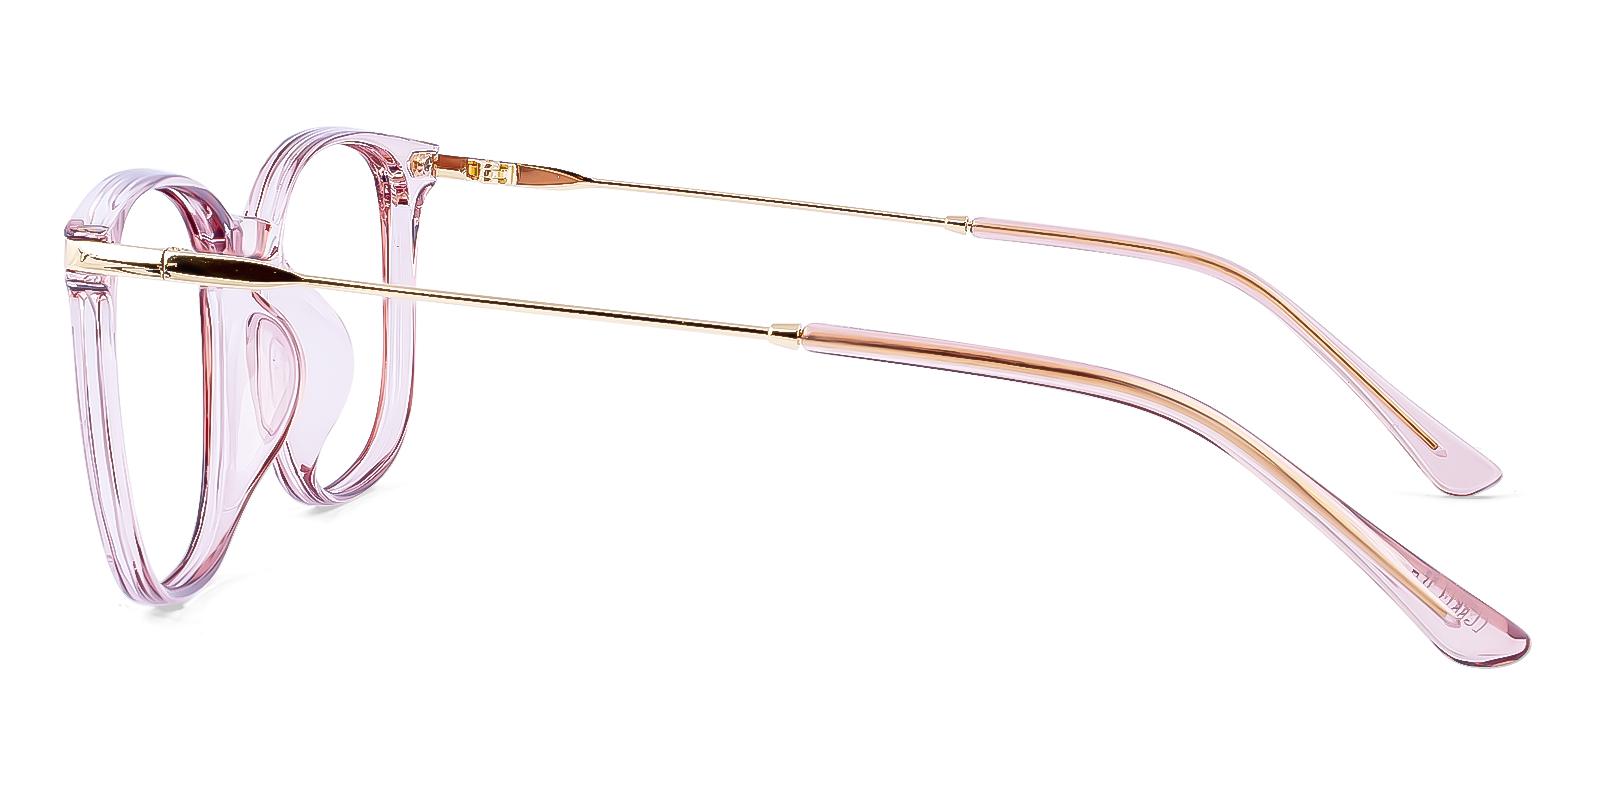 Mercier Pink Plastic Eyeglasses , UniversalBridgeFit Frames from ABBE Glasses